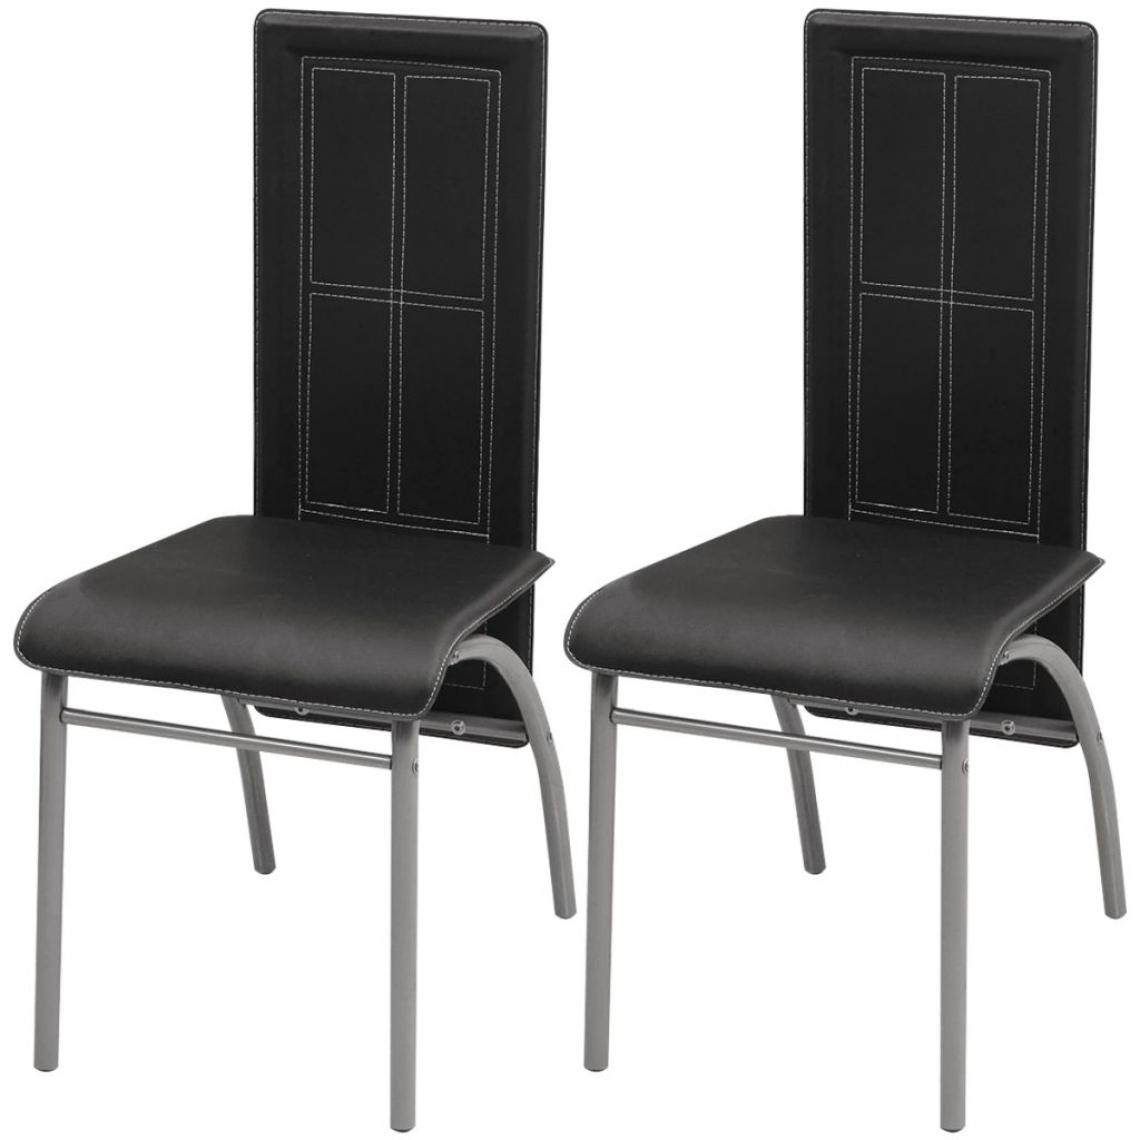 Decoshop26 - Lot de 2 chaises de salle à manger cuisine design moderne similicuir noir CDS020823 - Chaises